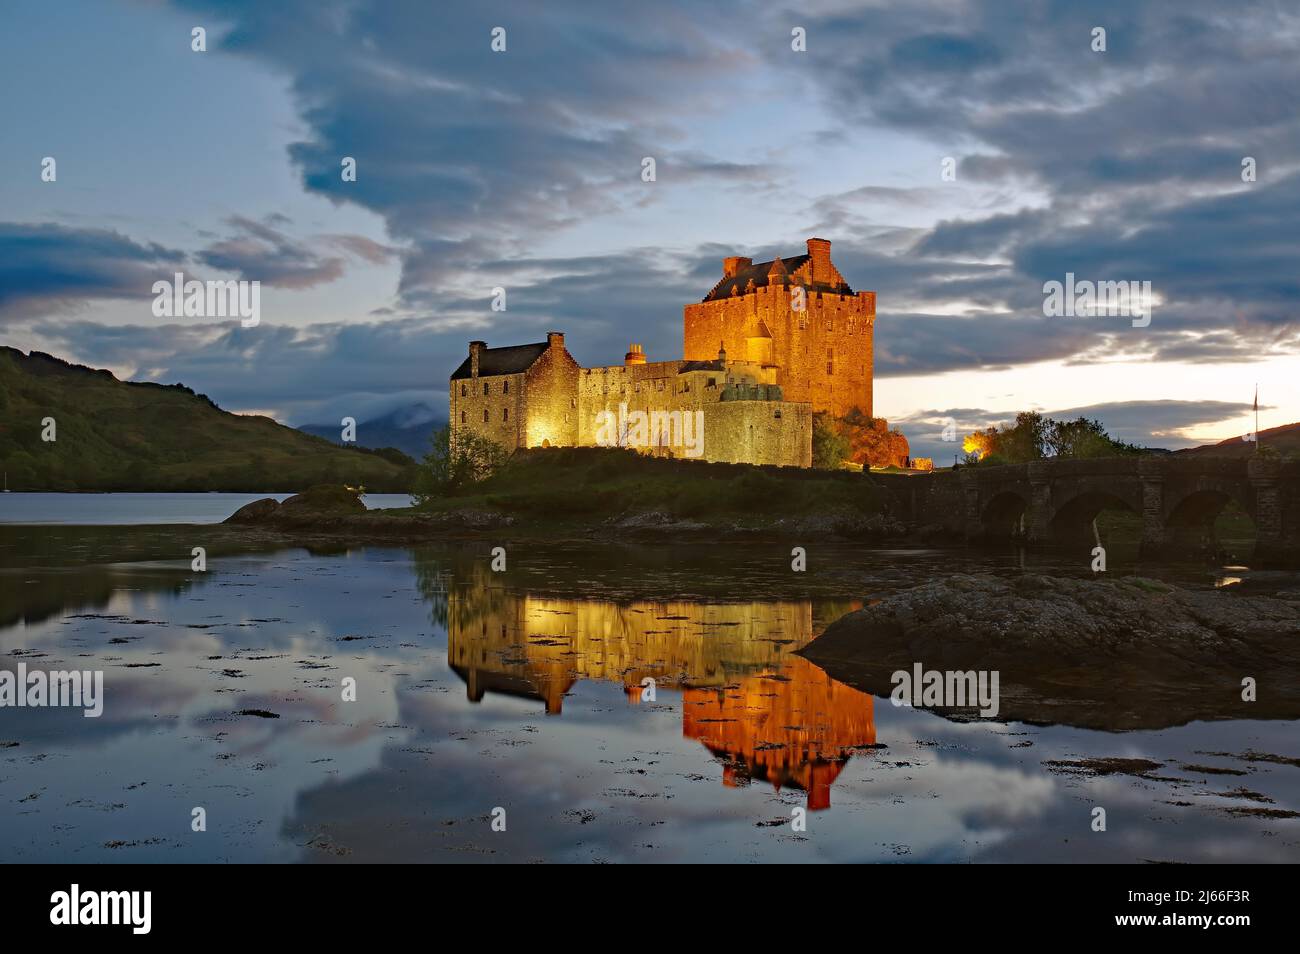 Das angestrahlte Castle Eilean Donan spiegelt sich im Wasser des Loch, blaue Stunde, Filmkulisse, Dornie, Highlands, Schottland, Grossbritannien Stock Photo